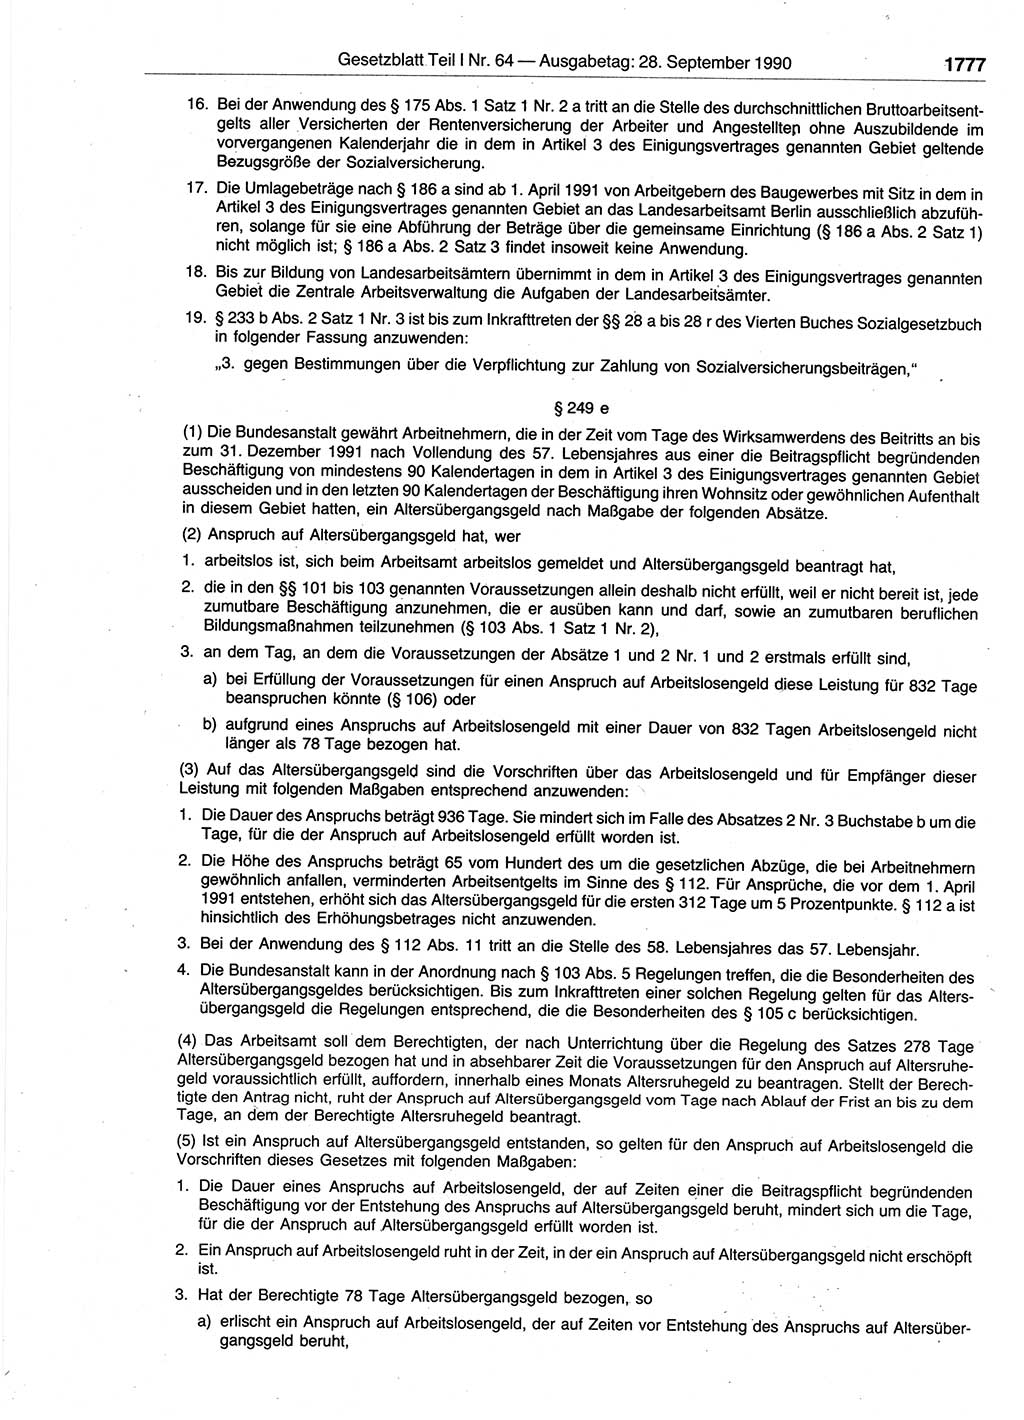 Gesetzblatt (GBl.) der Deutschen Demokratischen Republik (DDR) Teil Ⅰ 1990, Seite 1777 (GBl. DDR Ⅰ 1990, S. 1777)